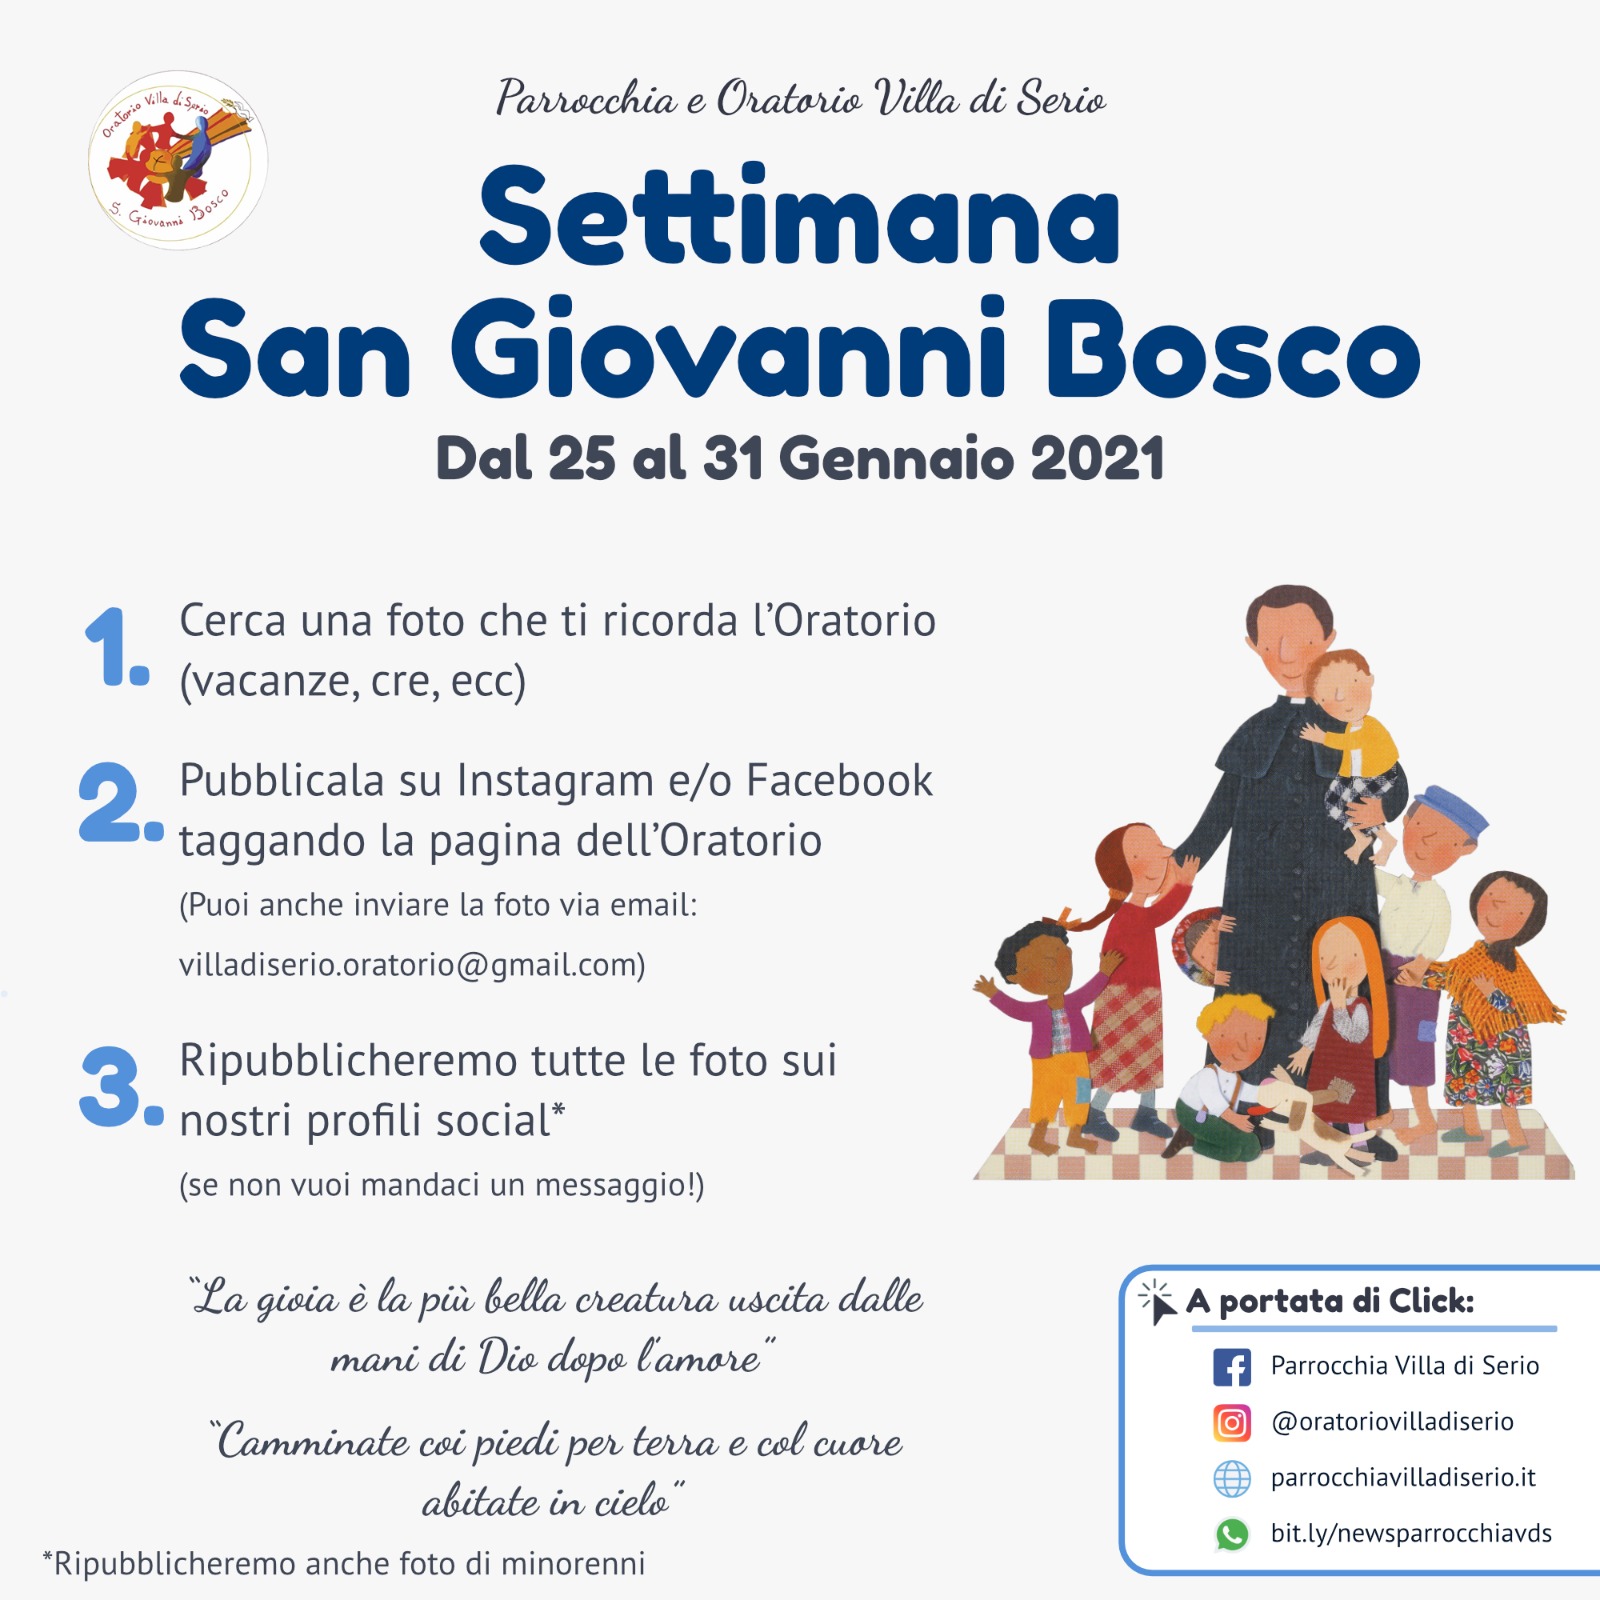 Settimana San Giovanni Bosco 2021